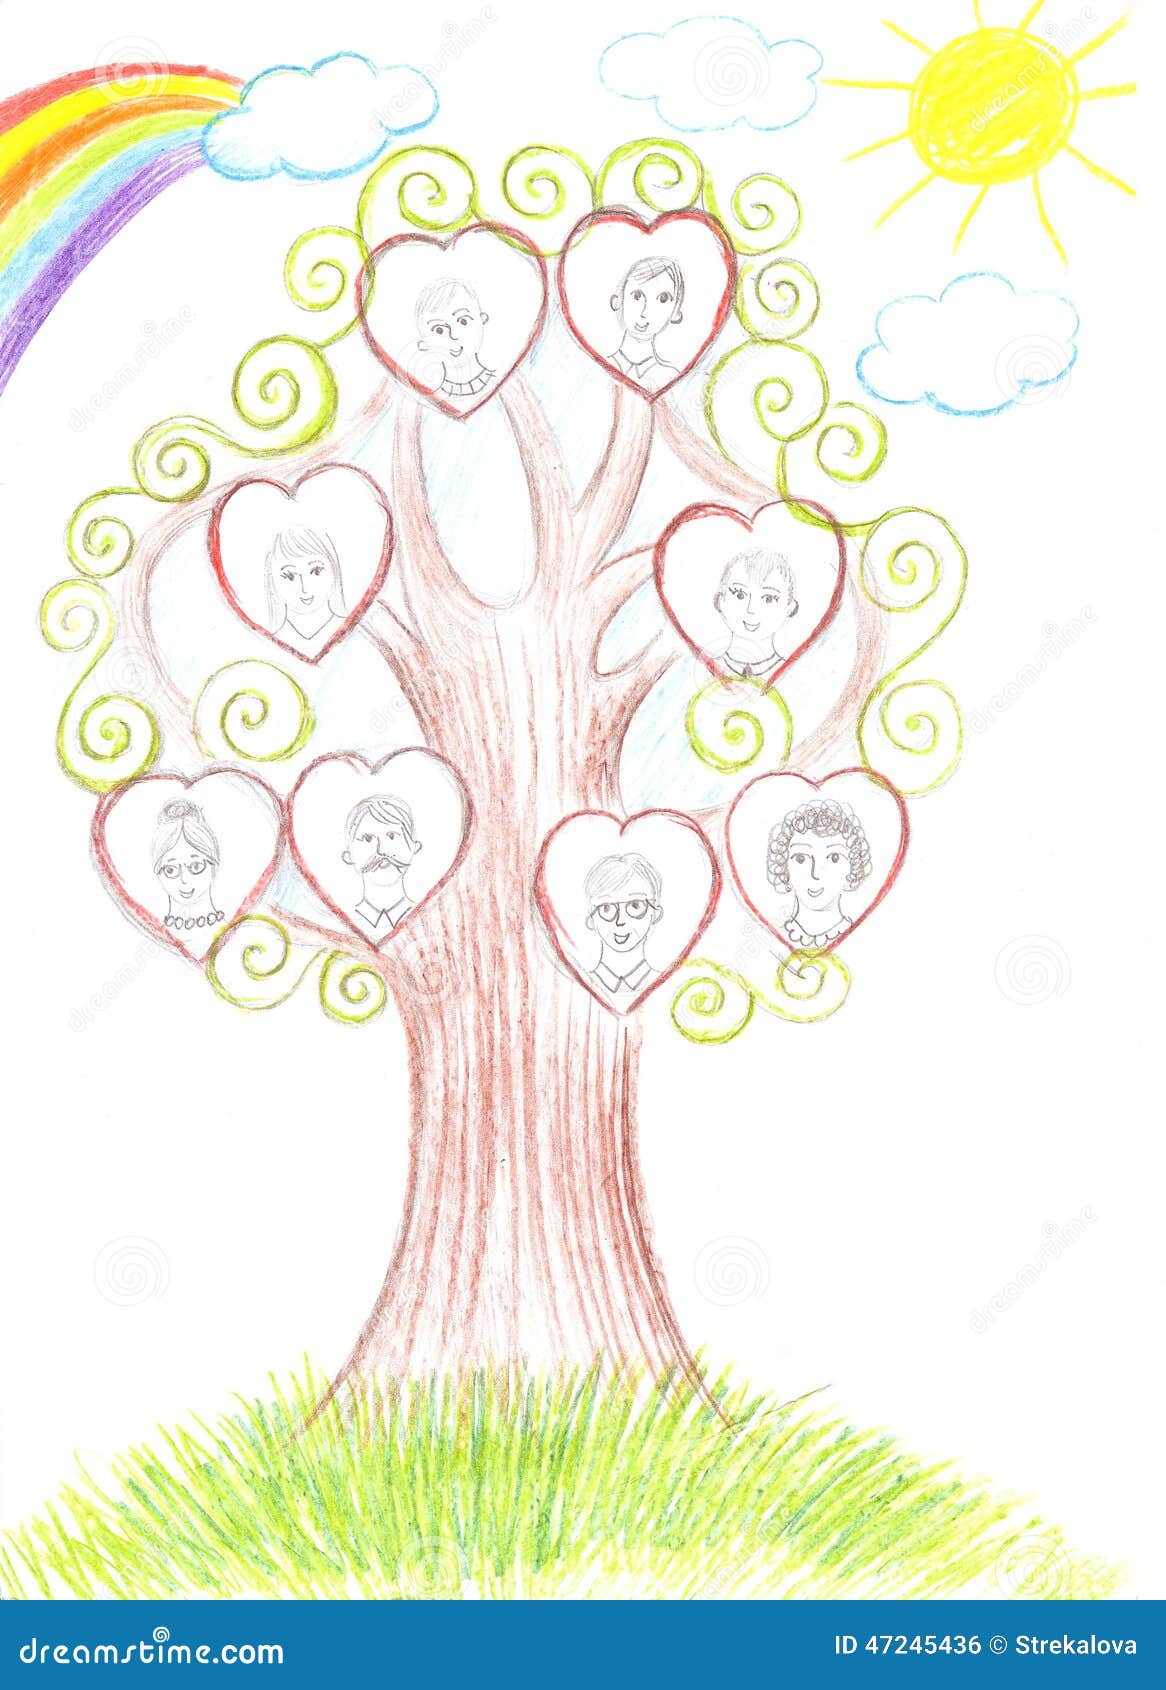 Niños Que Dibujan El árbol Genealógico De La Familia Stock de